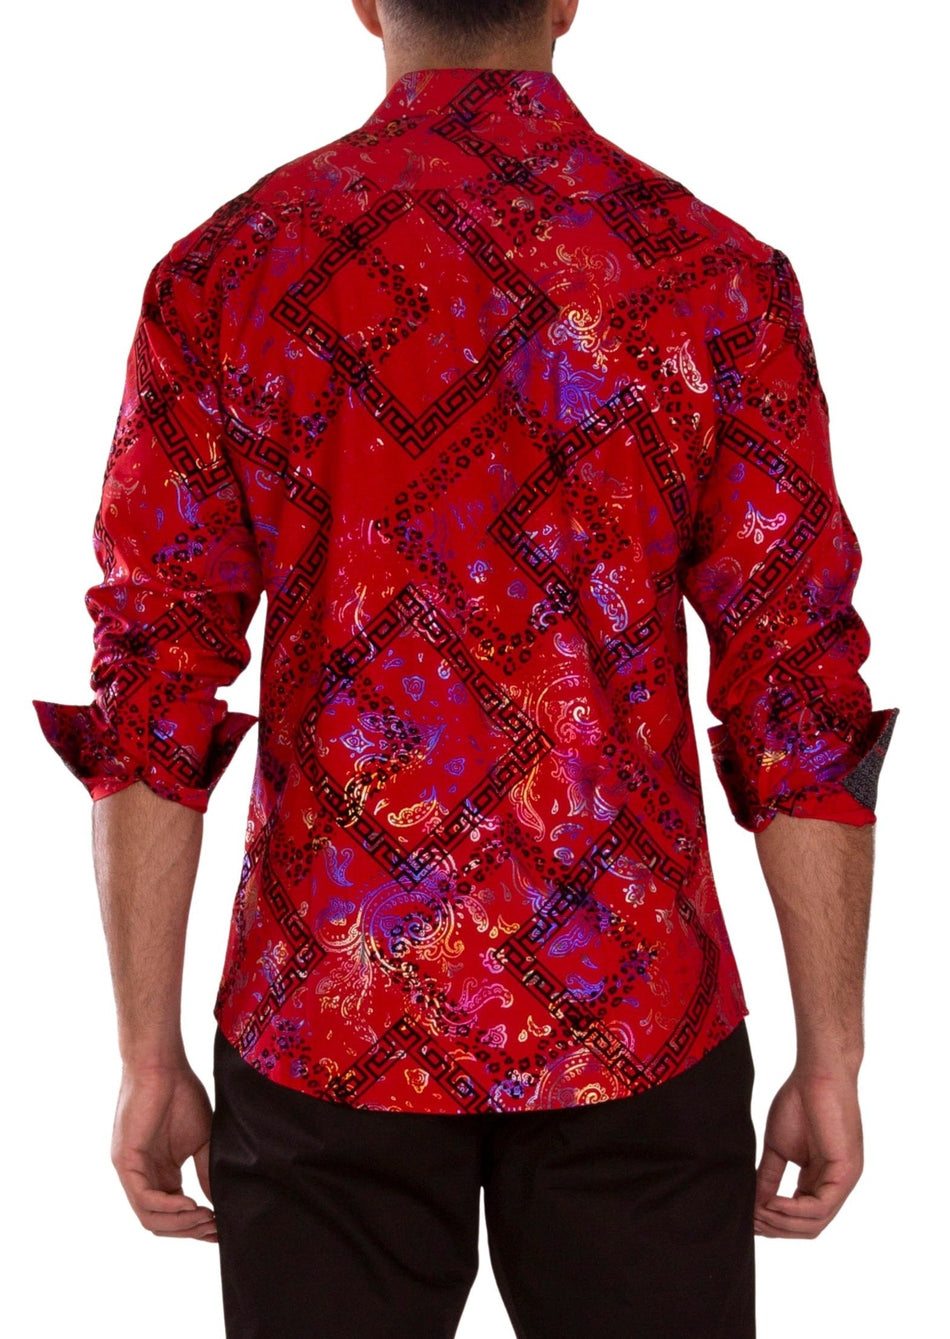 232257 - Red Button Up Long Sleeve Dress Shirt